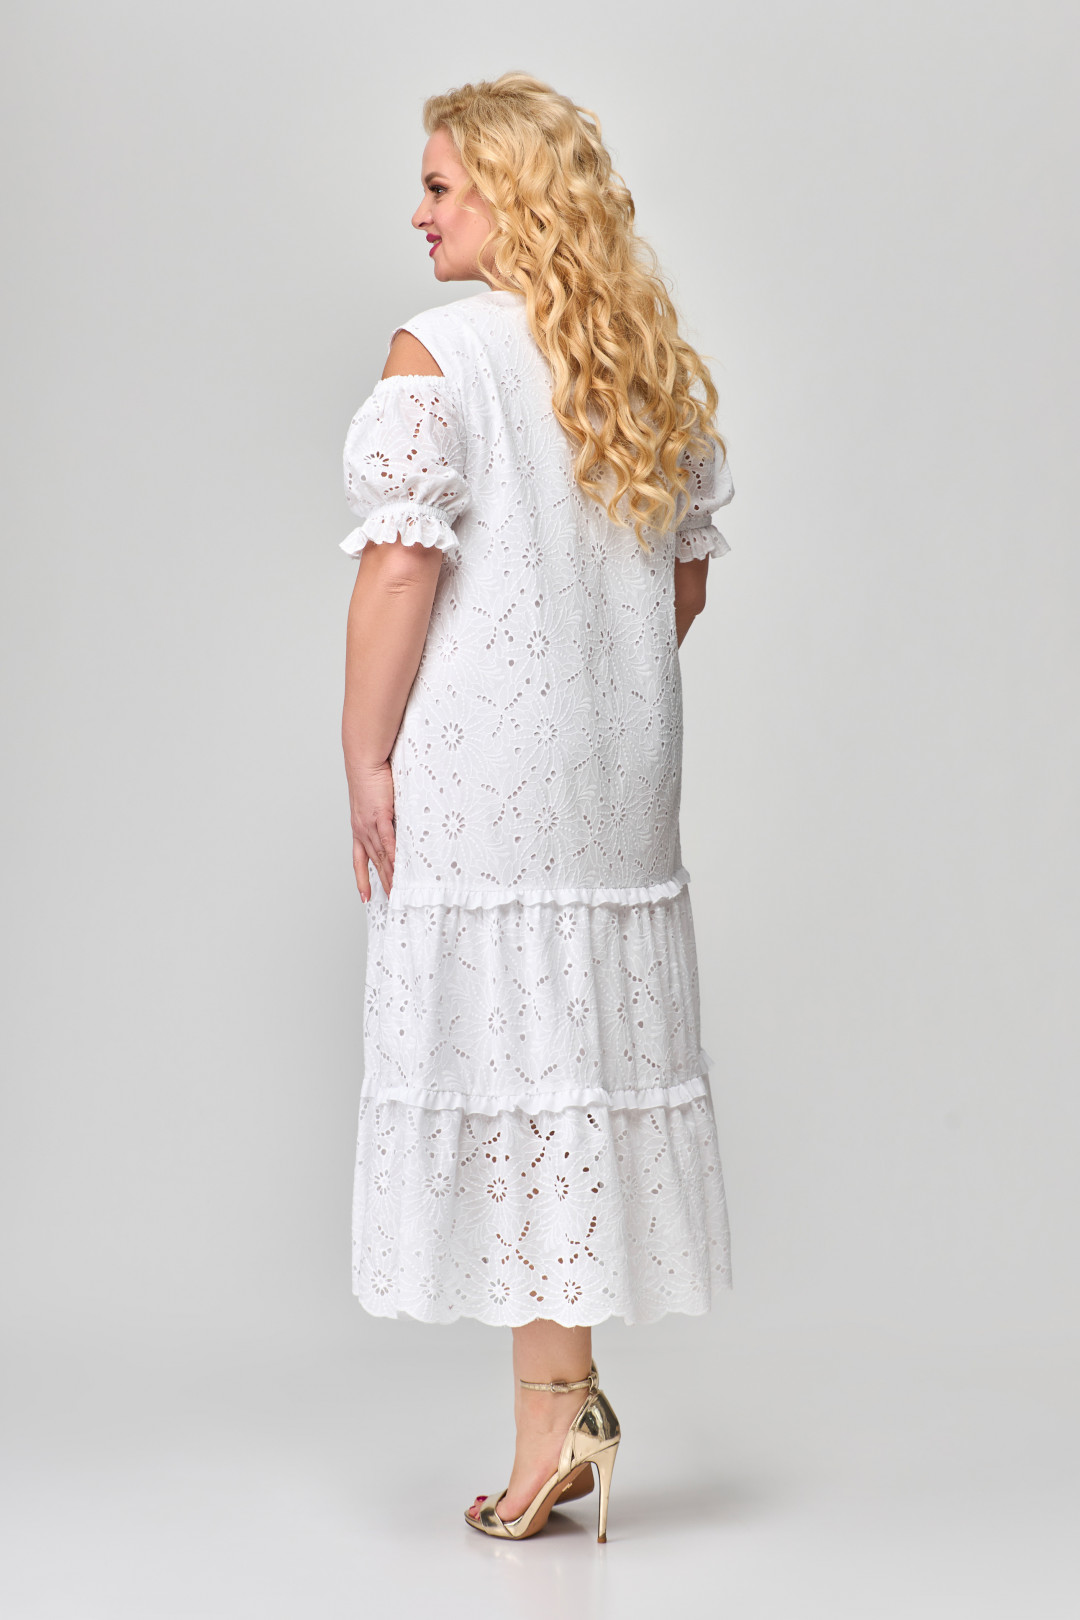 Платье Светлана-Стиль 1670 белый